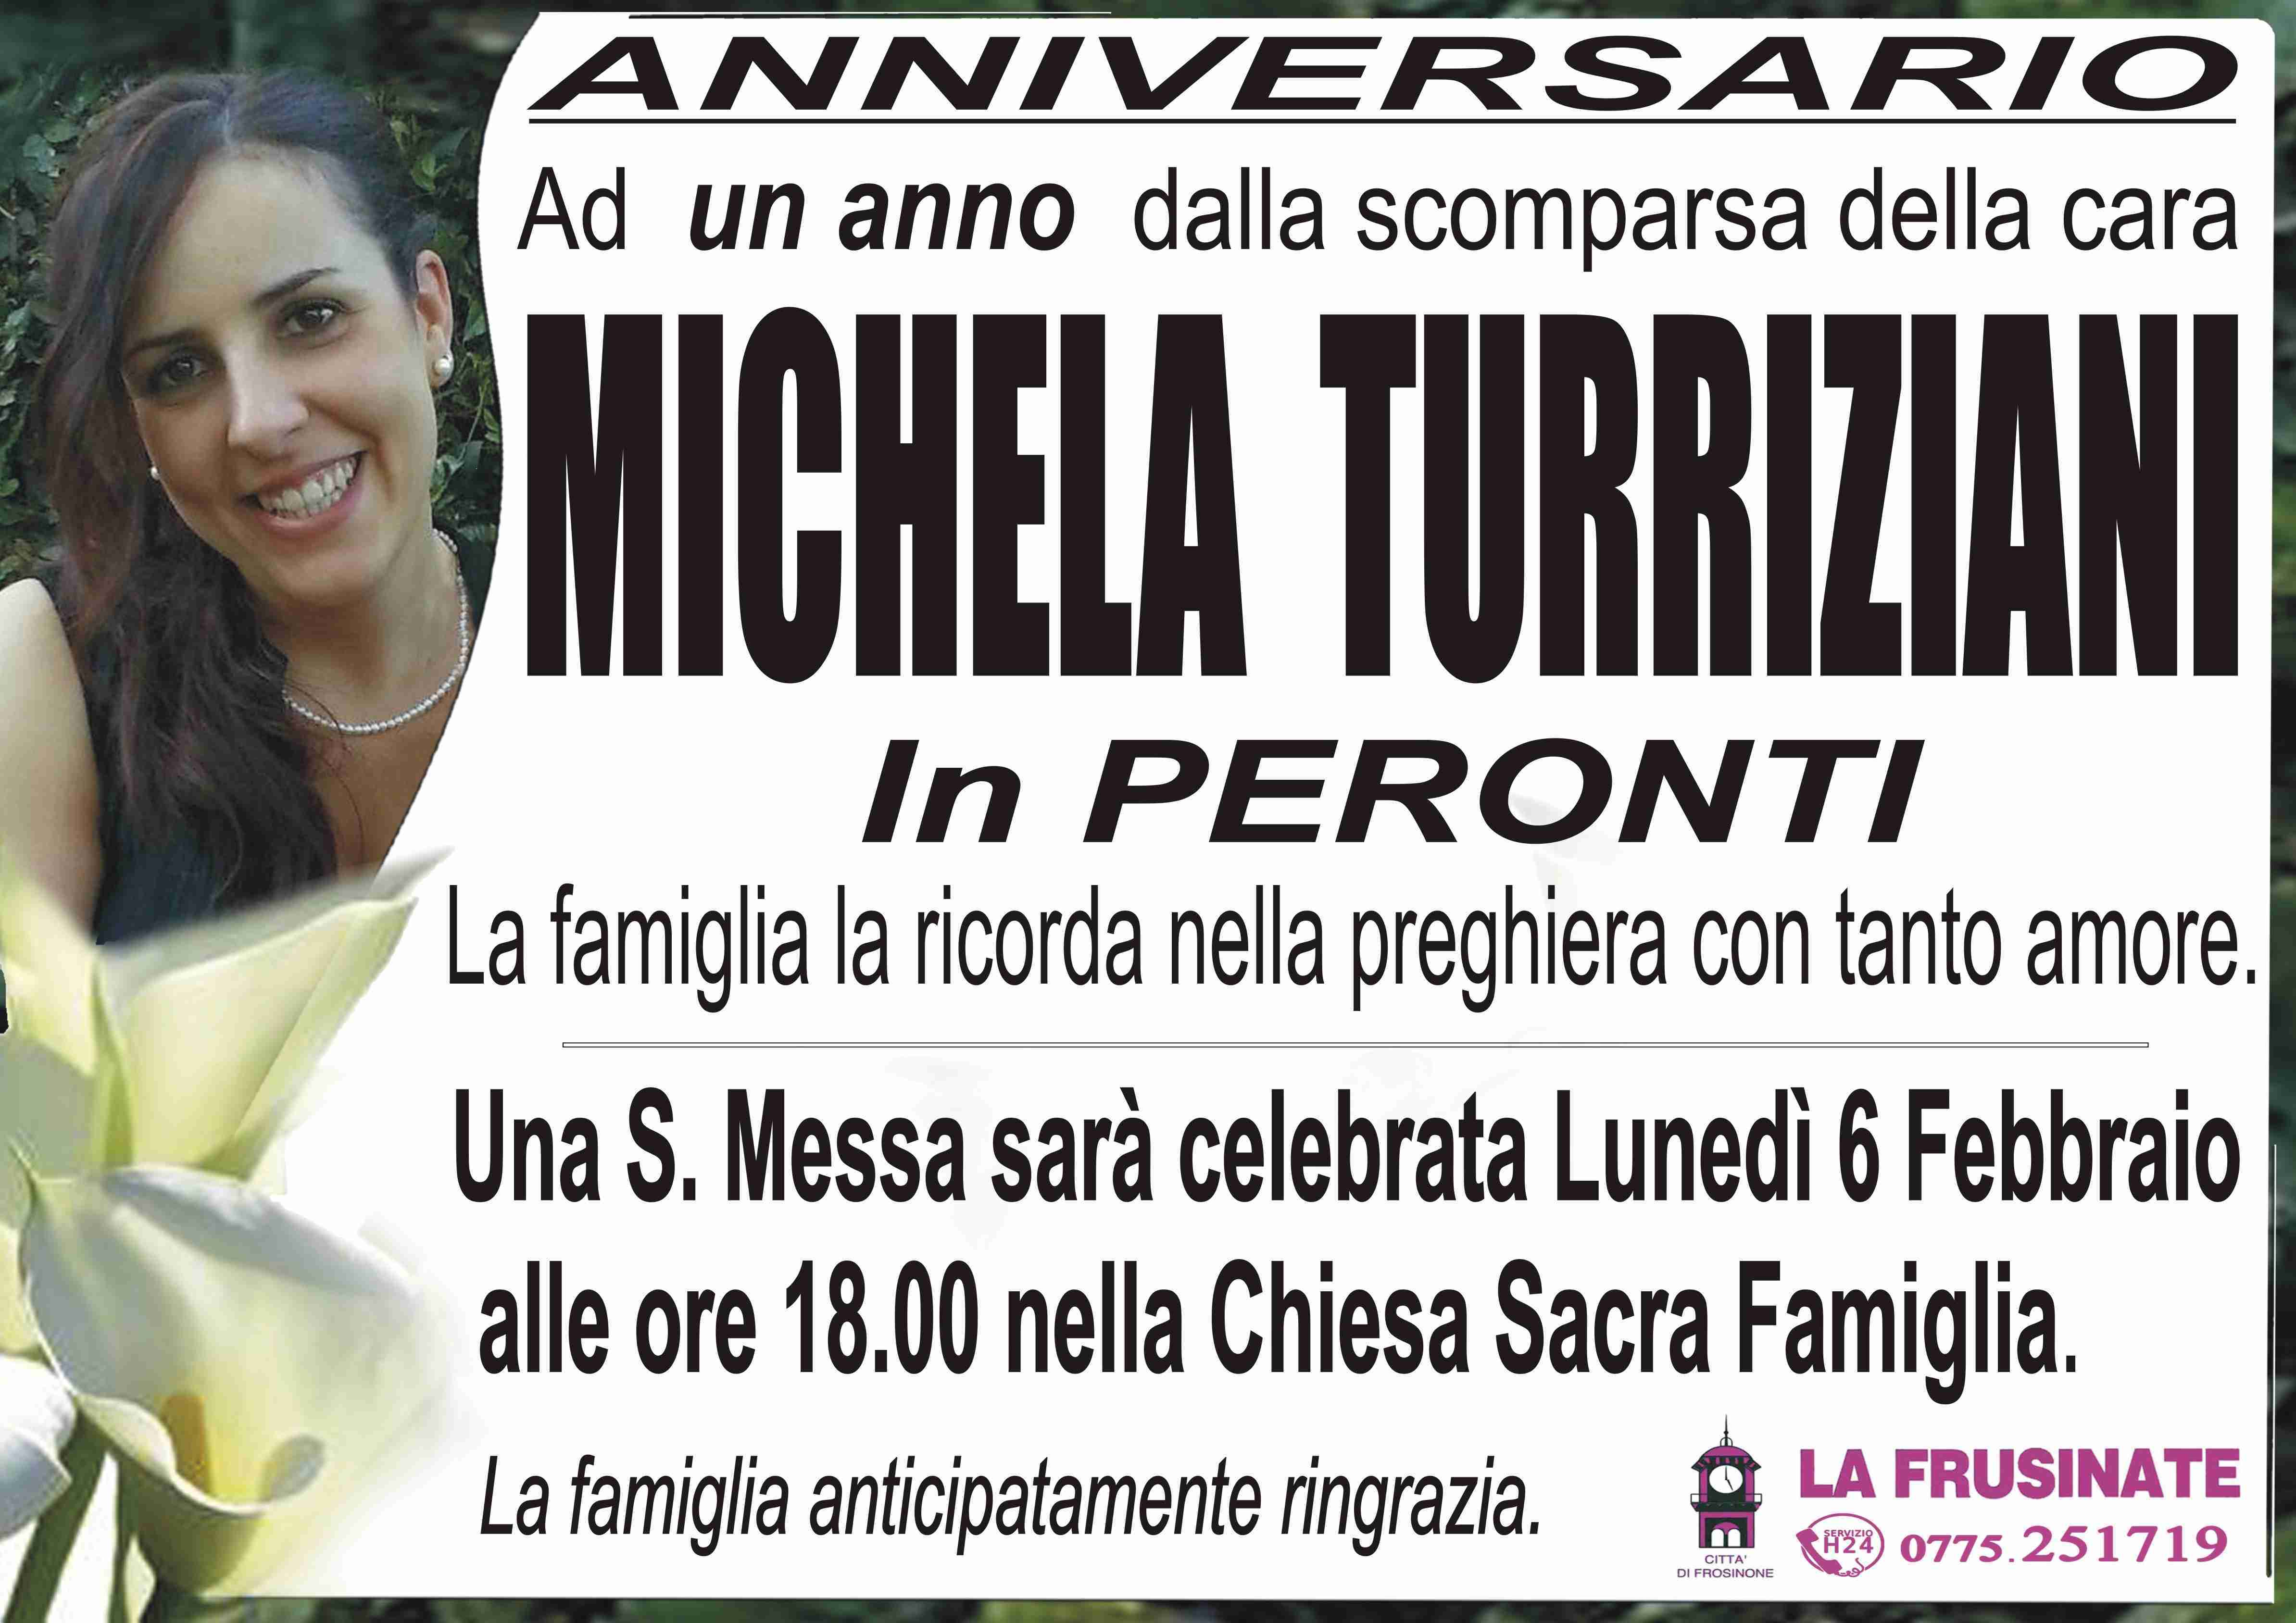 Michela Turriziani